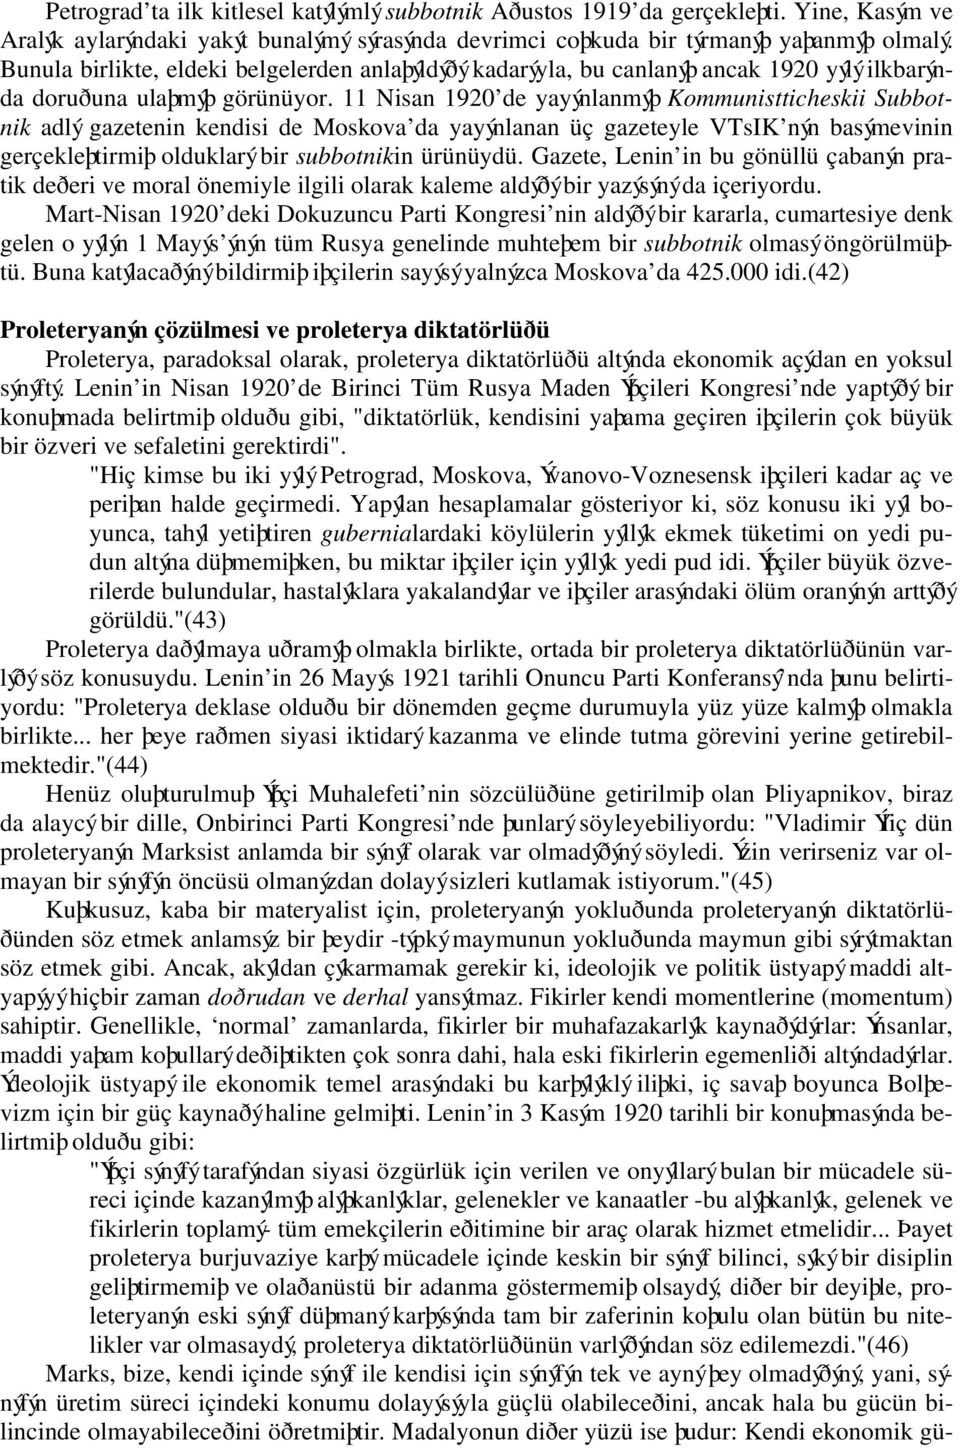 11 Nisan 1920 de yayýnlanmýþ Kommunistticheskii Subbotnik adlý gazetenin kendisi de Moskova da yayýnlanan üç gazeteyle VTsIK nýn basýmevinin gerçekleþtirmiþ olduklarý bir subbotnikin ürünüydü.